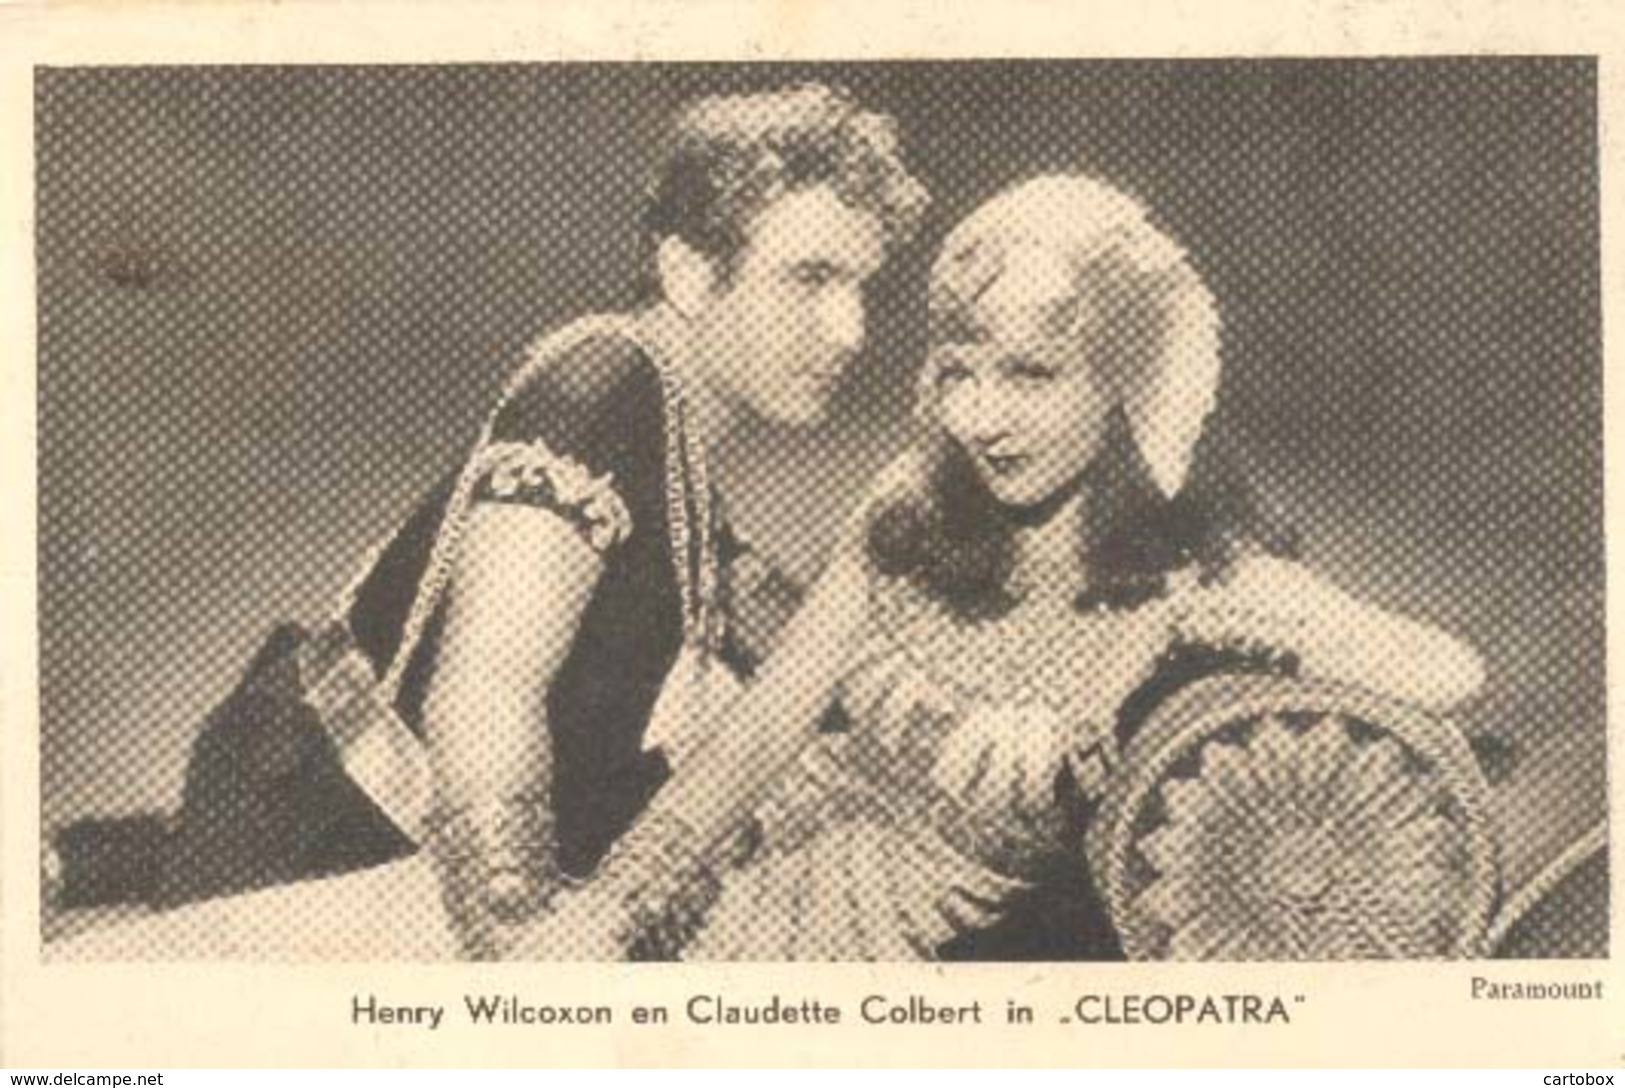 Henry Wilcoxon En Claudette Colbert In "Cleopatra" ( Paramount Pictures) Machinestempel Amsterdam (2 X Scan) - Artiesten